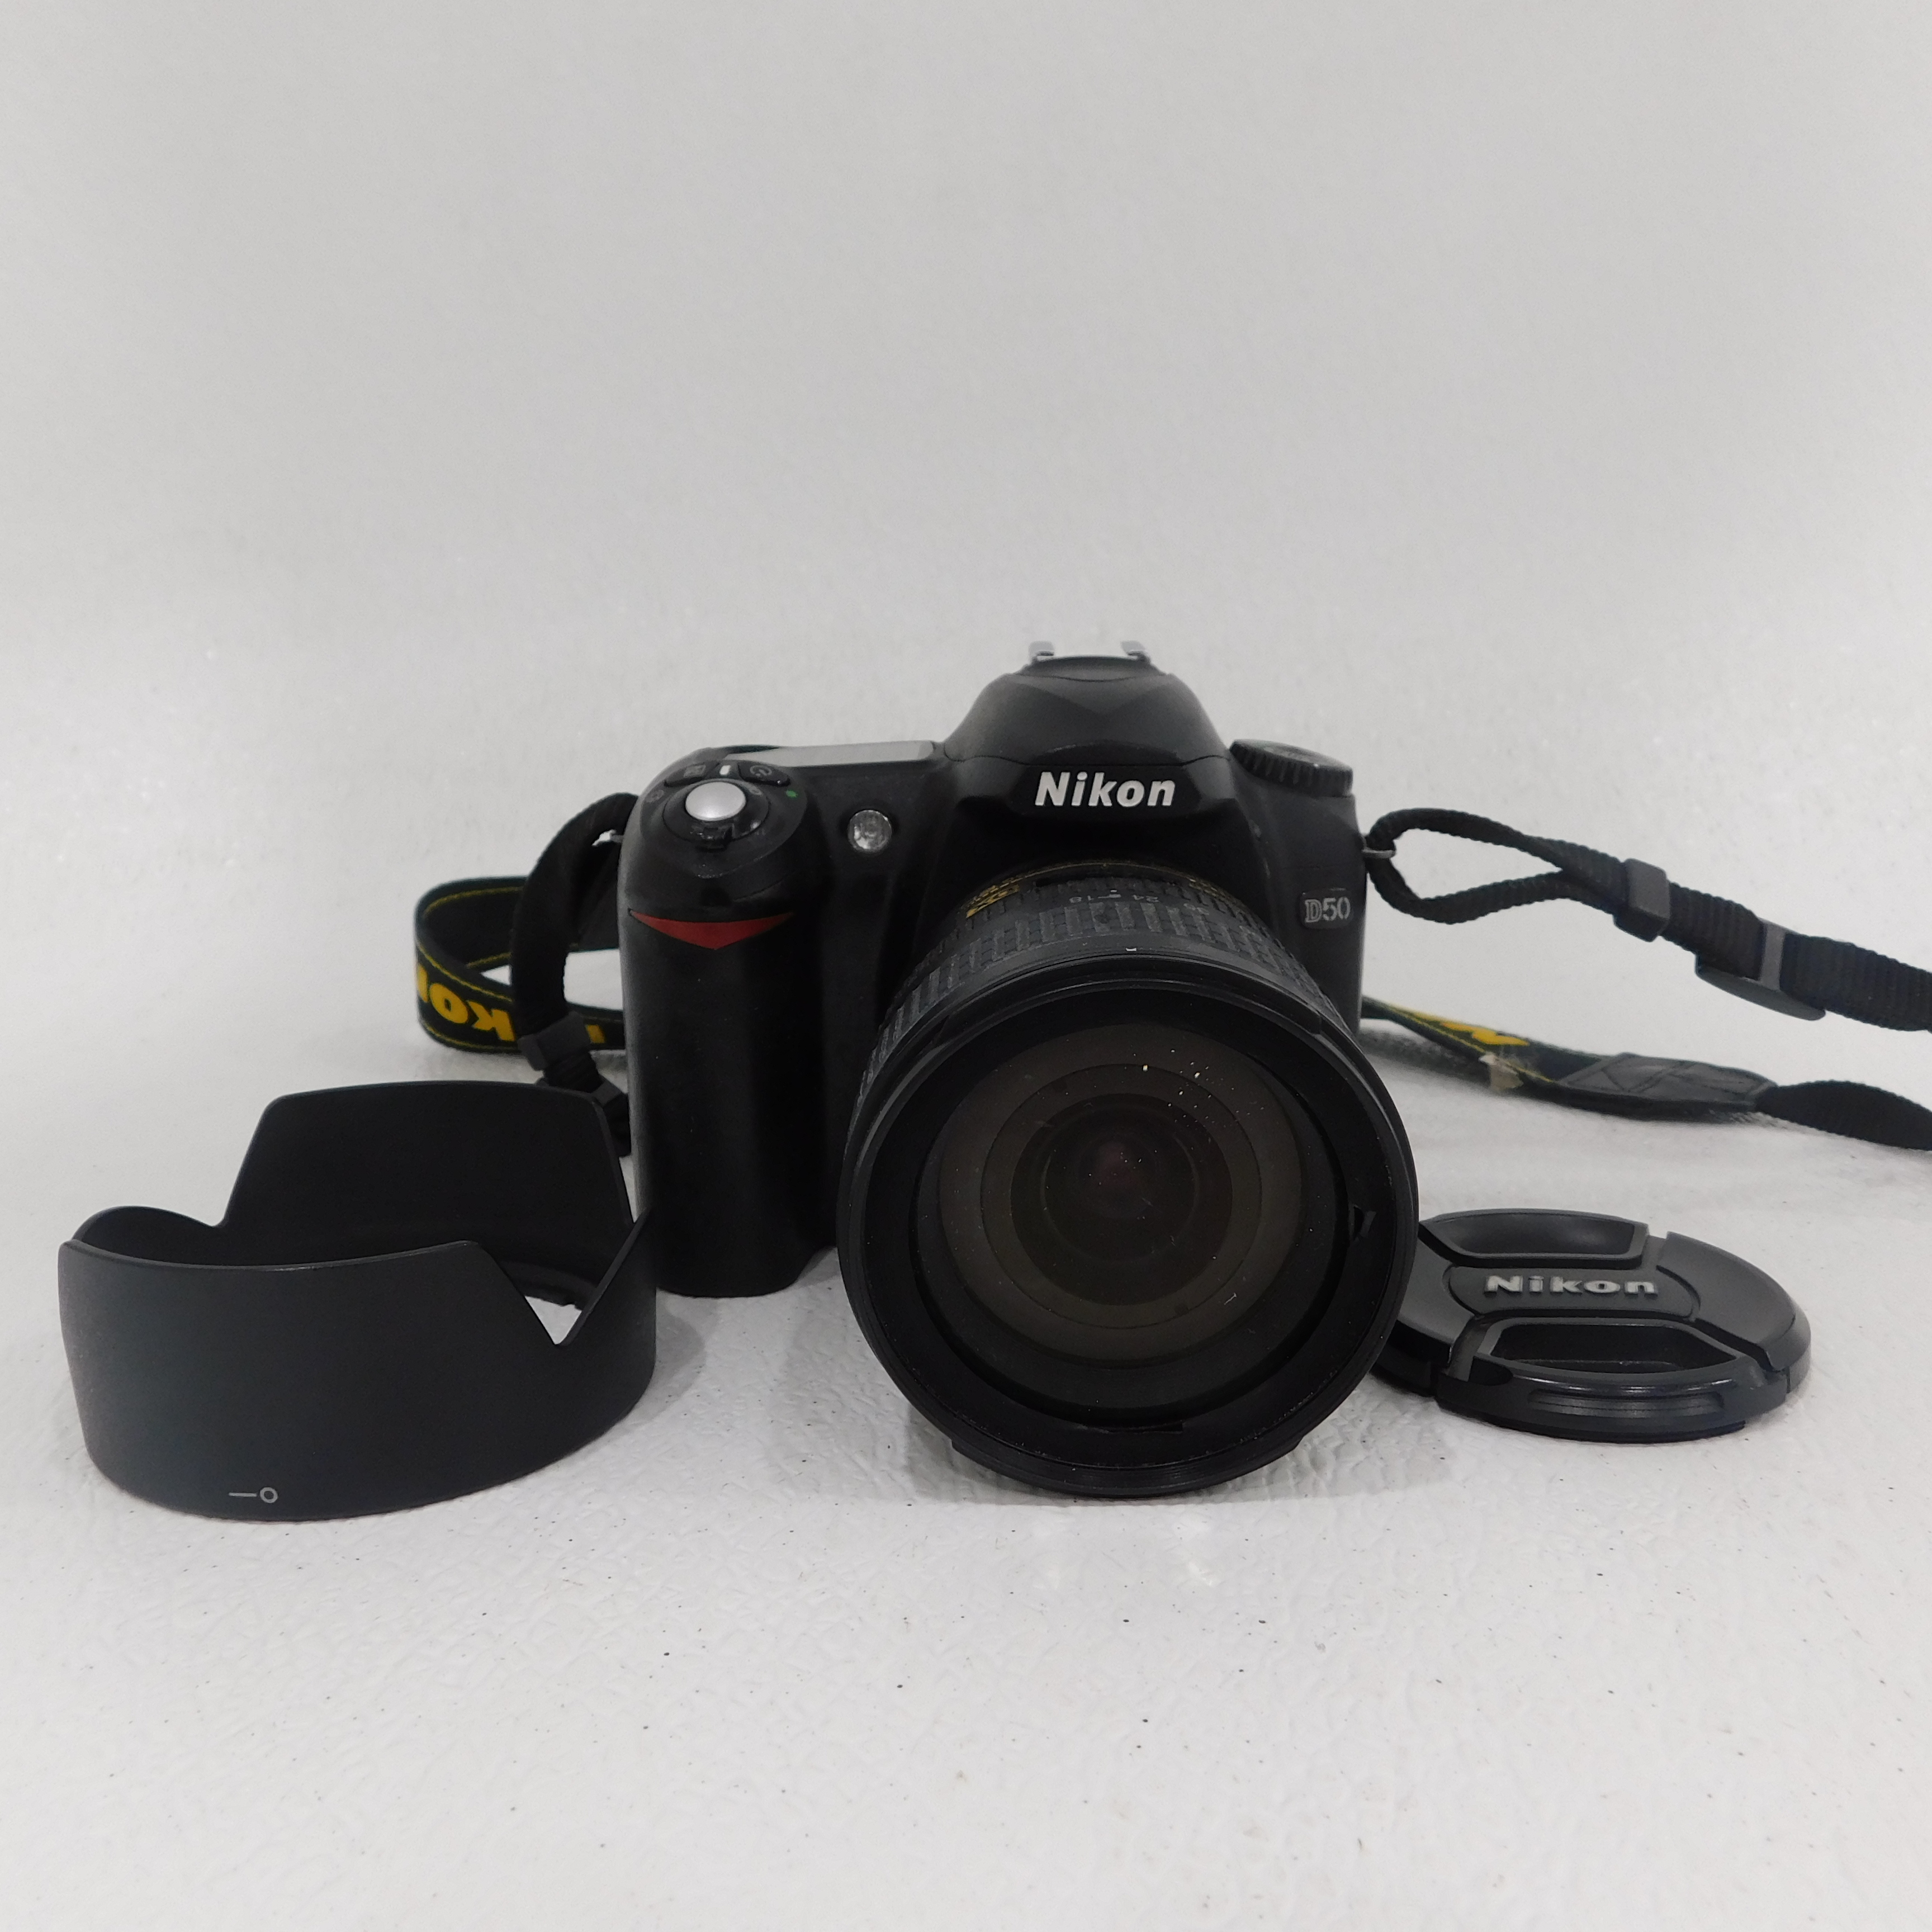 Buy Nikon D50 DSLR Digital Camera w/ 18-70mm Lens for USD 58.49 |  GoodwillFinds